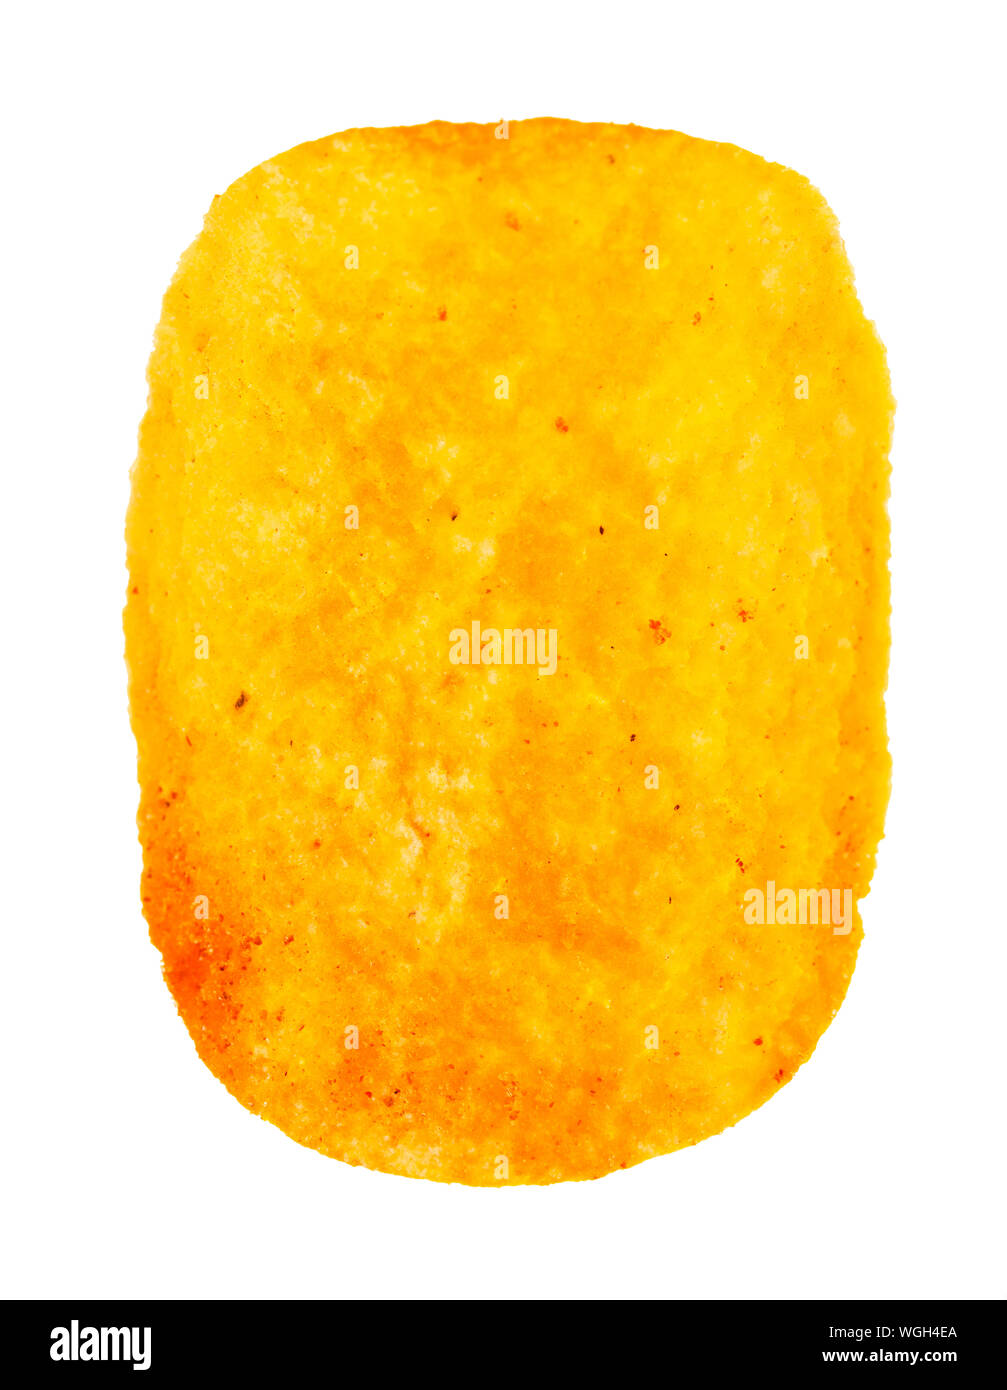 Singolo chip di patata con paprika isolati su sfondo bianco Foto Stock